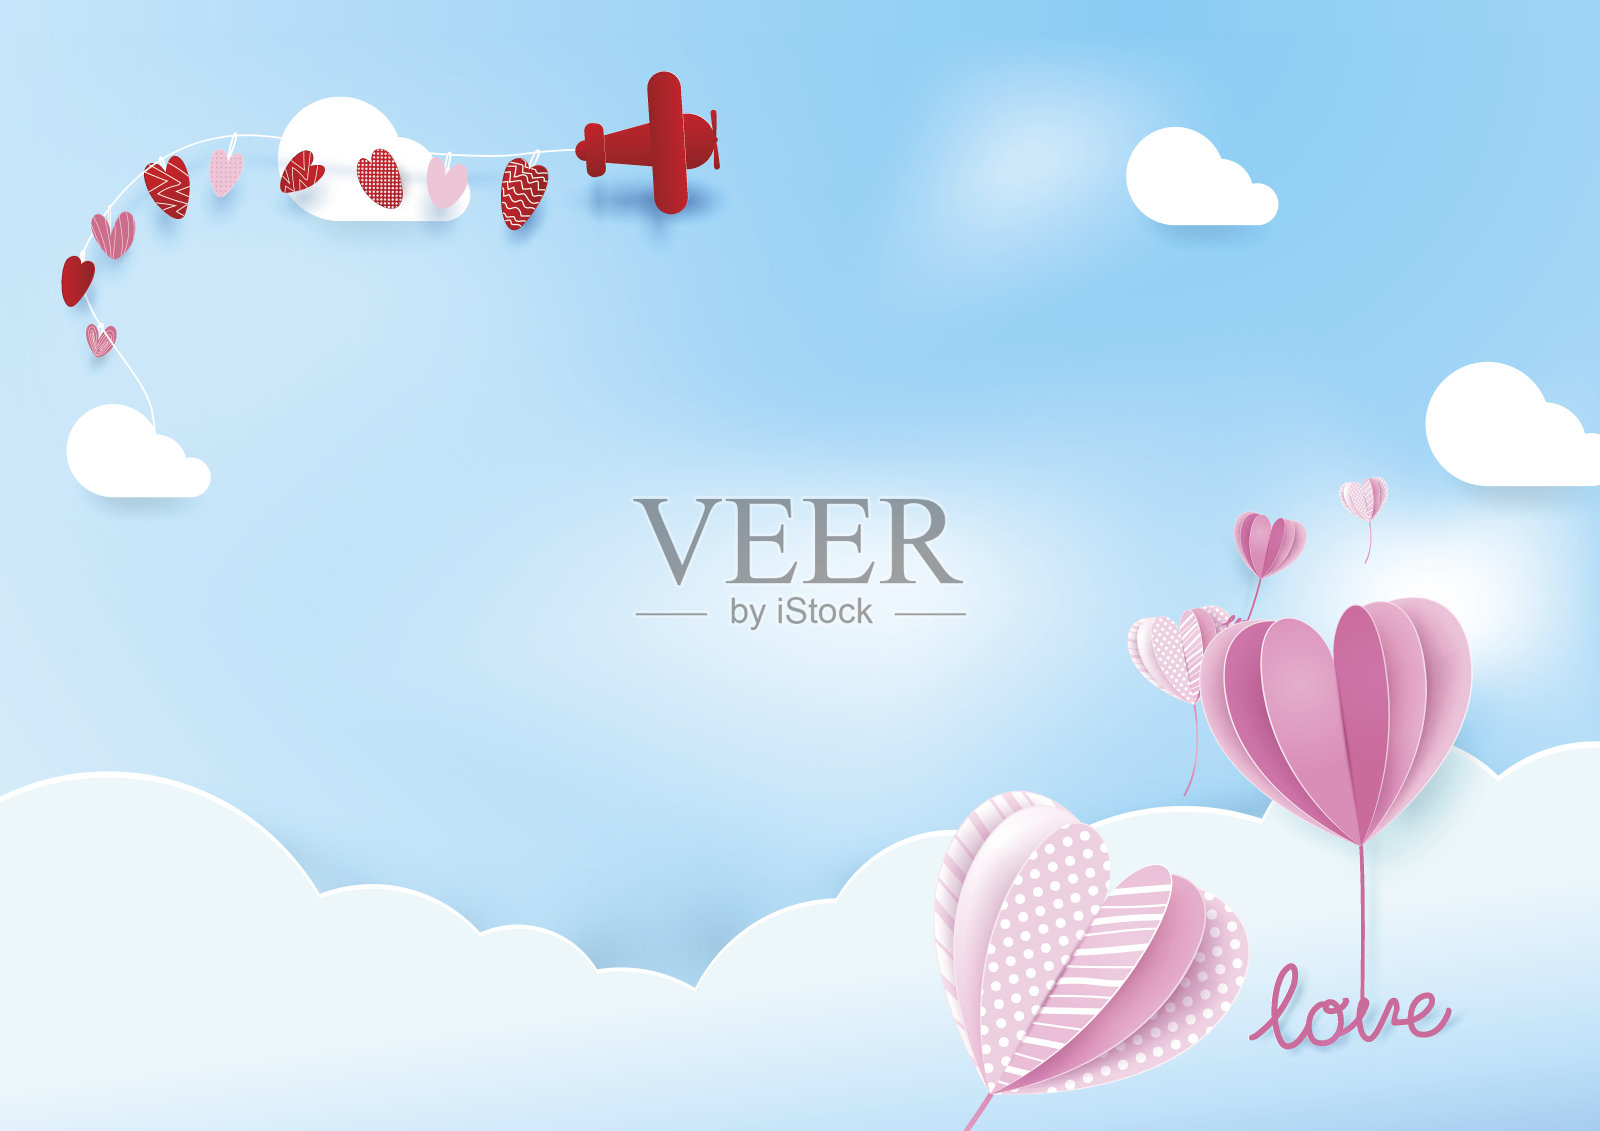 纸艺术风格心形气球与飞机在空中飞行。情人节和爱情的背景插画图片素材